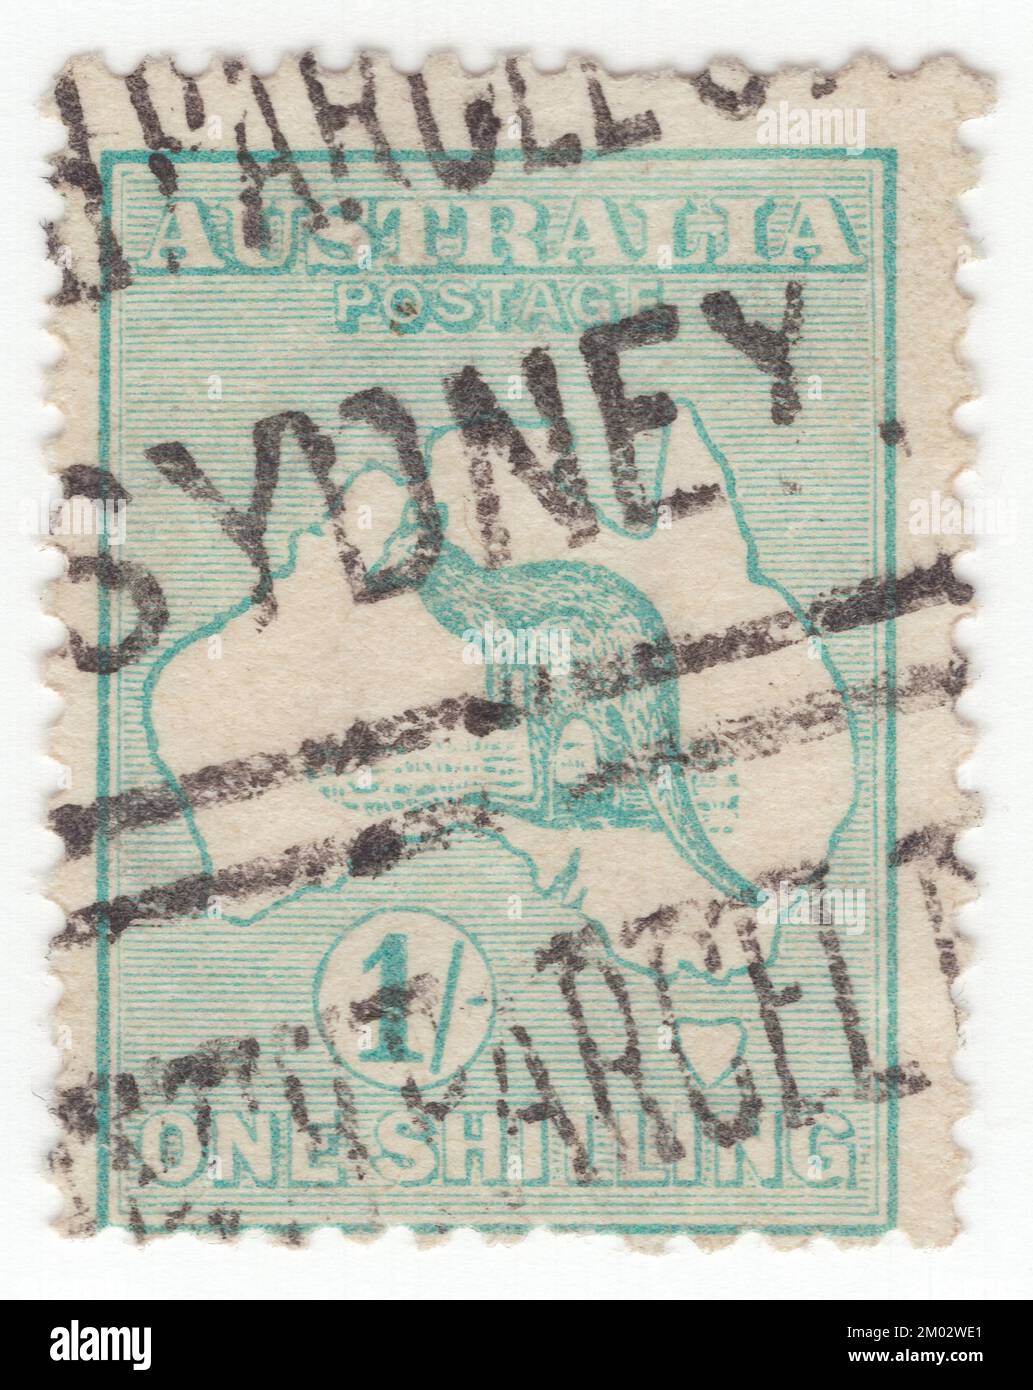 AUSTRALIEN — 1913: Ein blau-grüner Briefmarken mit 1 Schilling, der ein Känguru und eine Karte Australiens darstellt. Australien ist der älteste, flachste und trockenste bewohnte Kontinent mit den am wenigsten fruchtbaren Böden. Es ist ein megaweites Land und seine Größe verleiht ihm eine große Vielfalt an Landschaften und Klimabedingungen, mit Wüsten im Zentrum, tropischen Regenwäldern im Nordosten und Bergketten im Südosten. Das Känguru ist ein bekanntes Symbol Australiens. Erste Ausgabe von australischen Briefmarken. Das Känguru und die ewu sind auf dem australischen Wappen zu sehen Stockfoto